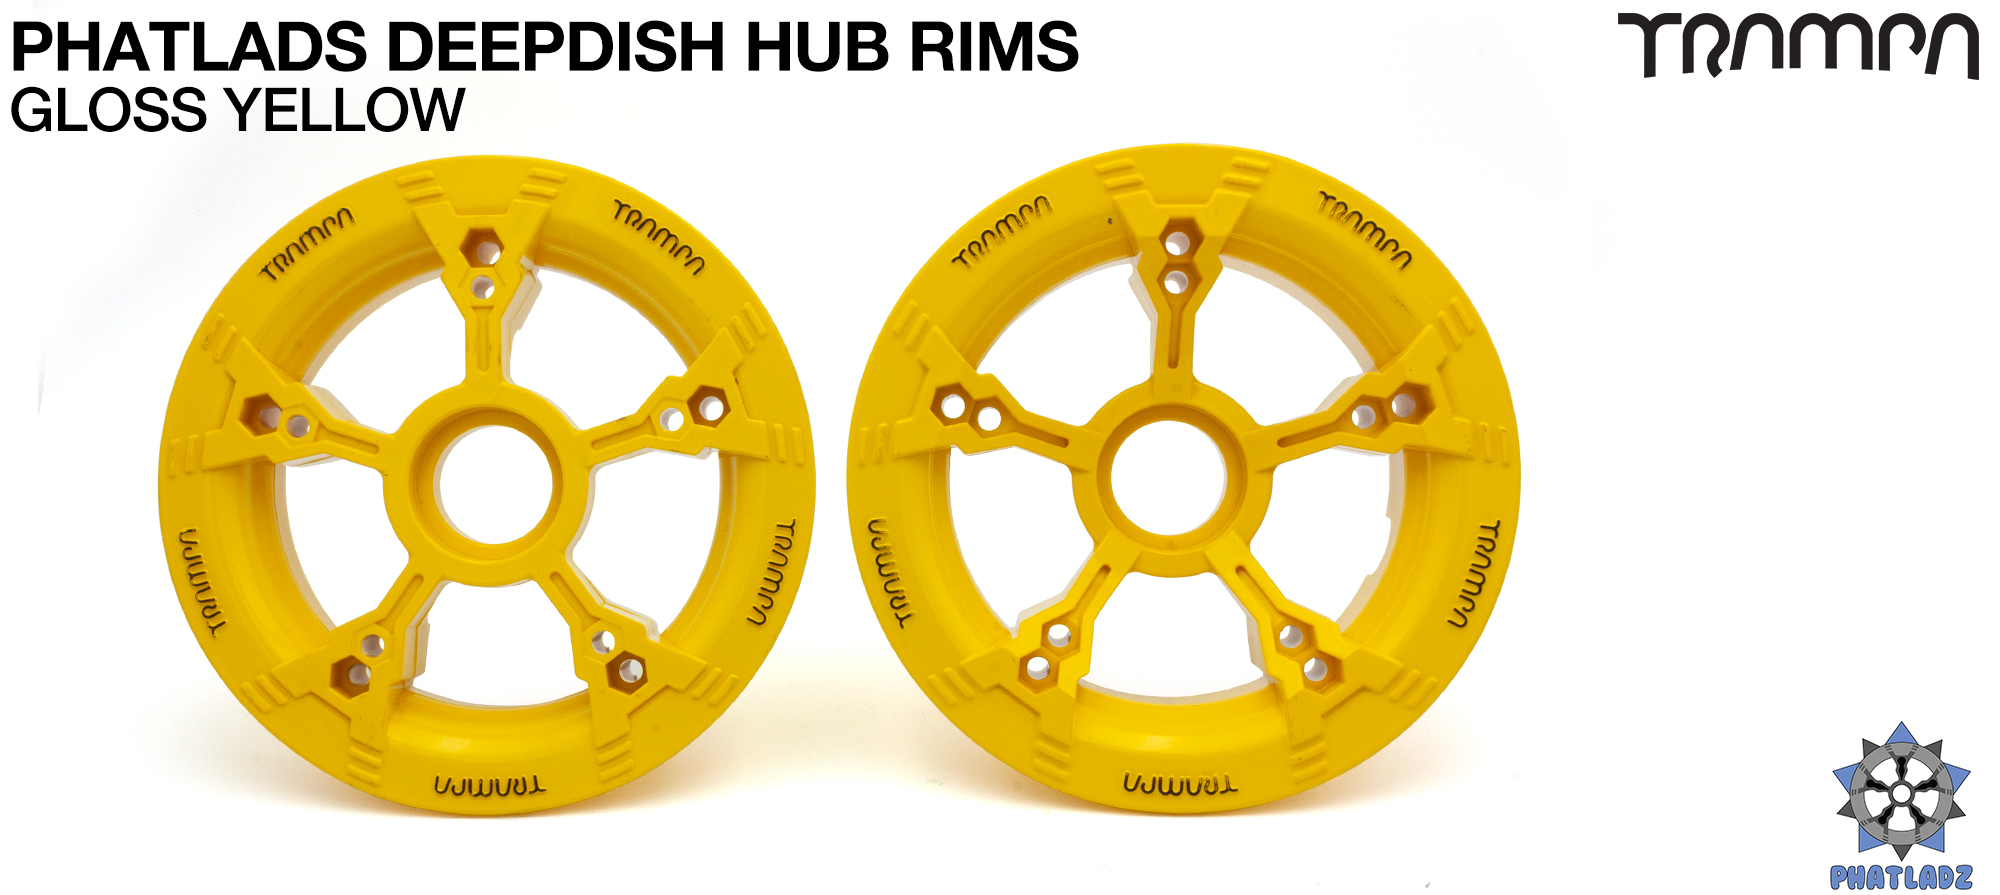 PHATLADS - 5 Spoke Hub Deep Dish Split Rim hub fits 6,7,8,9 & 10 Inch tyres!! Amazing